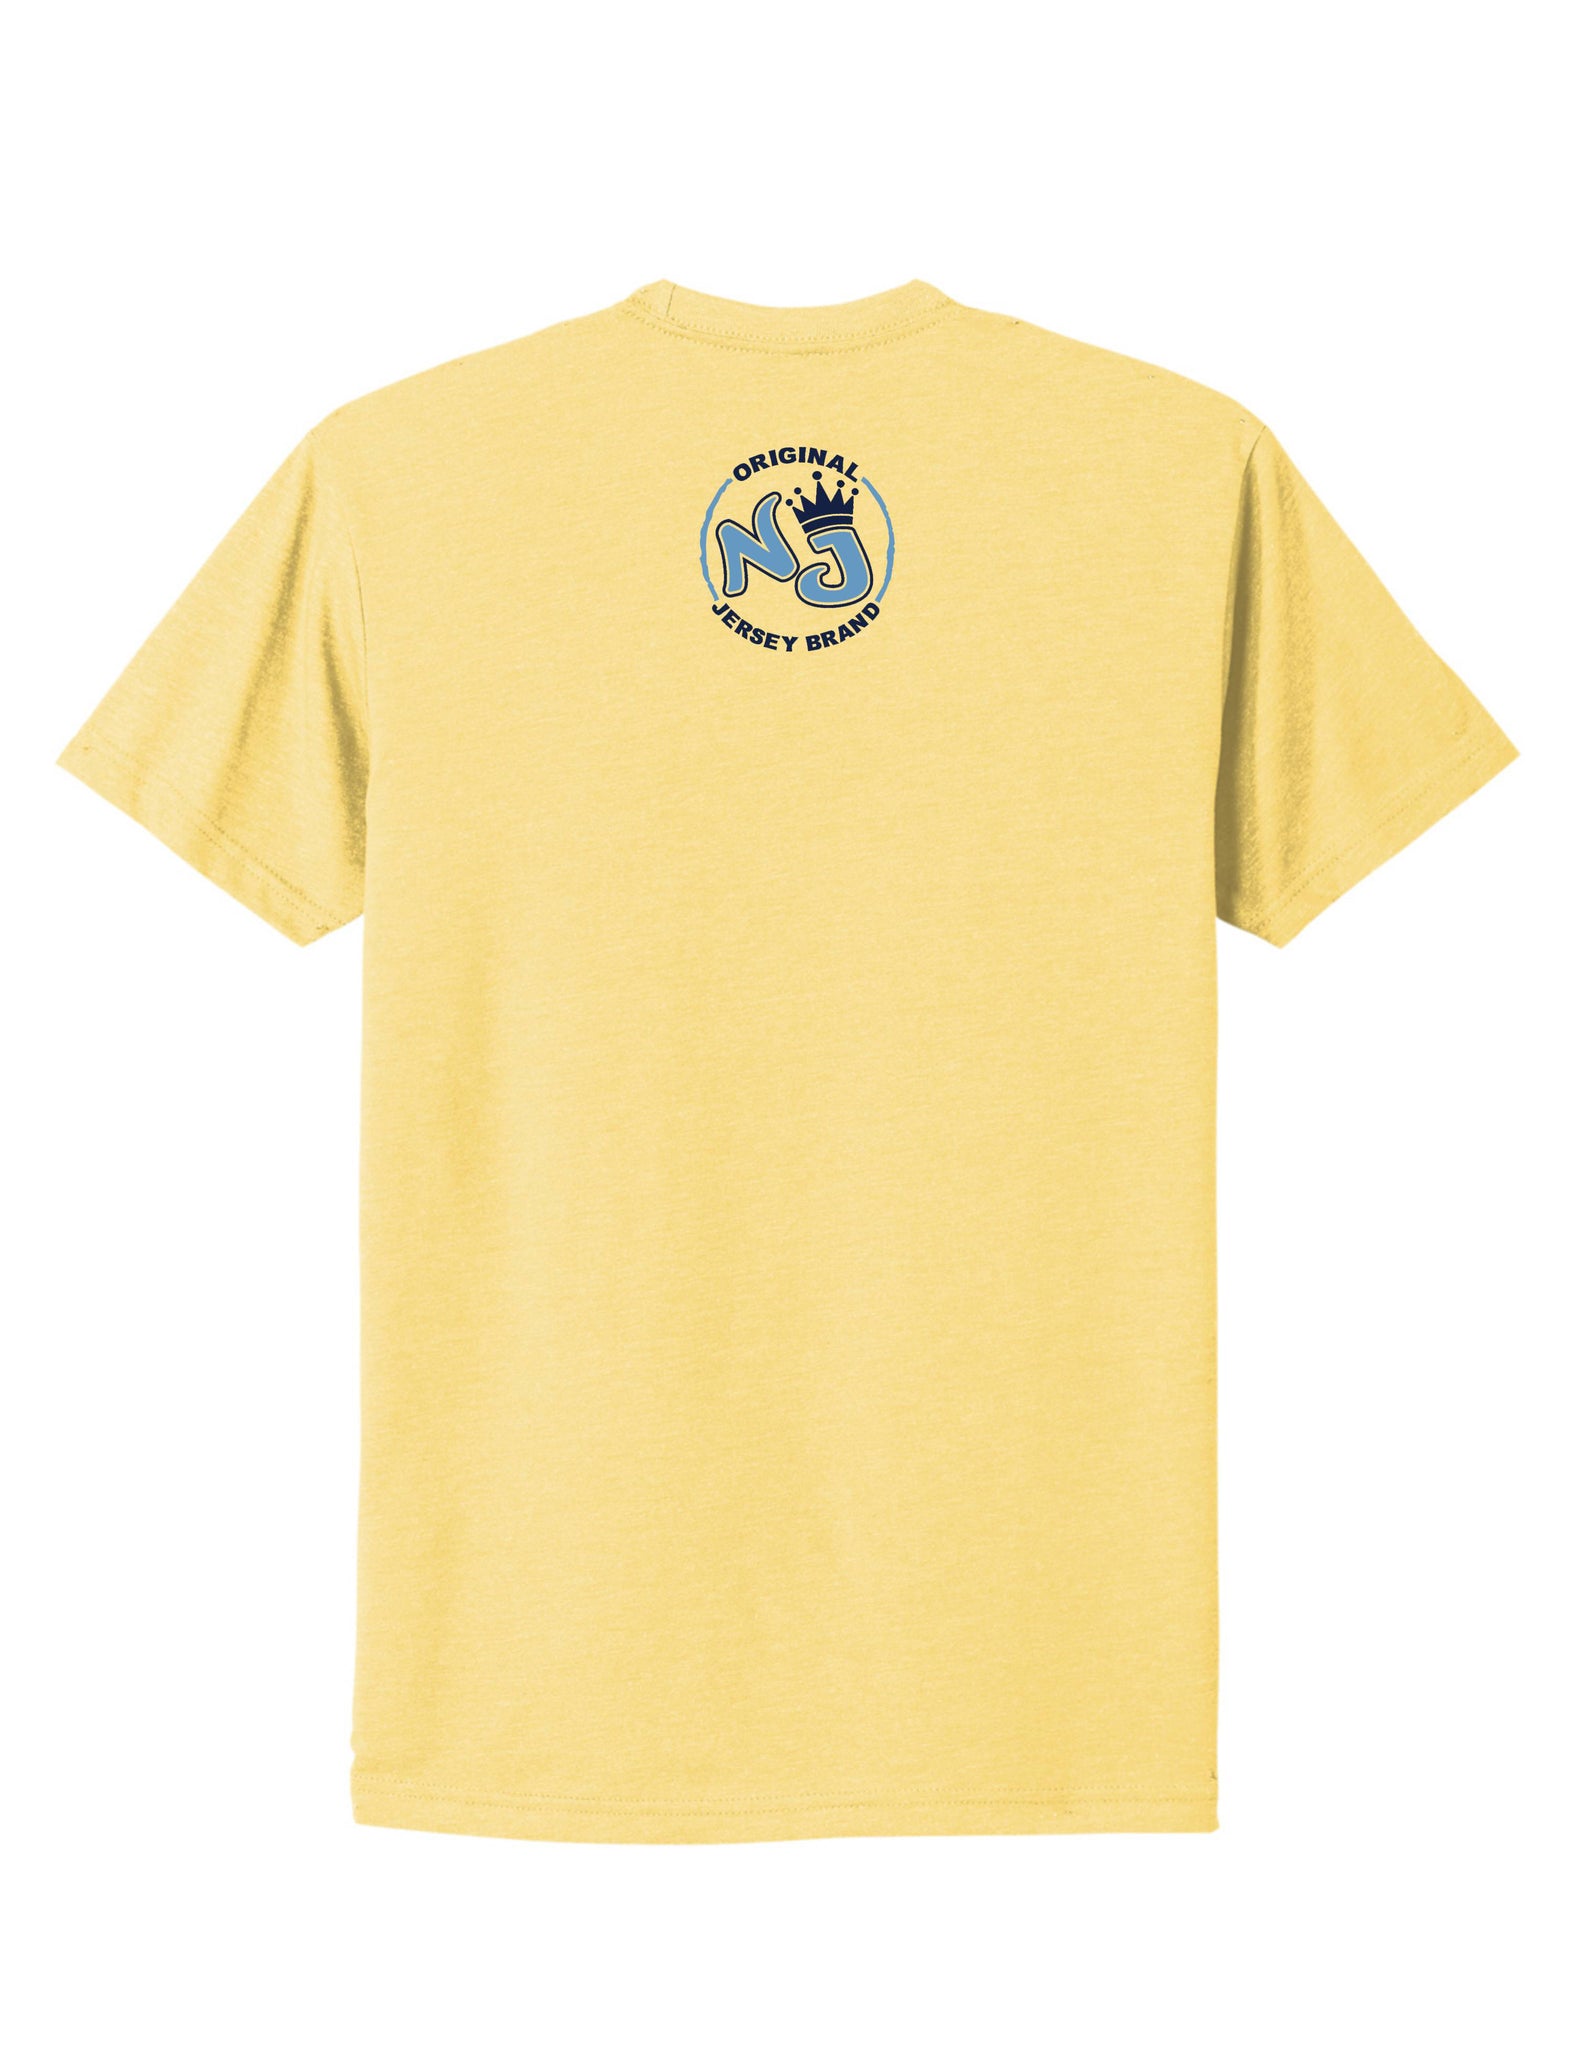 Super Soft Cotton/Poly Blend T-Shirt (Banana Cream) – NJSpiritWear LLC